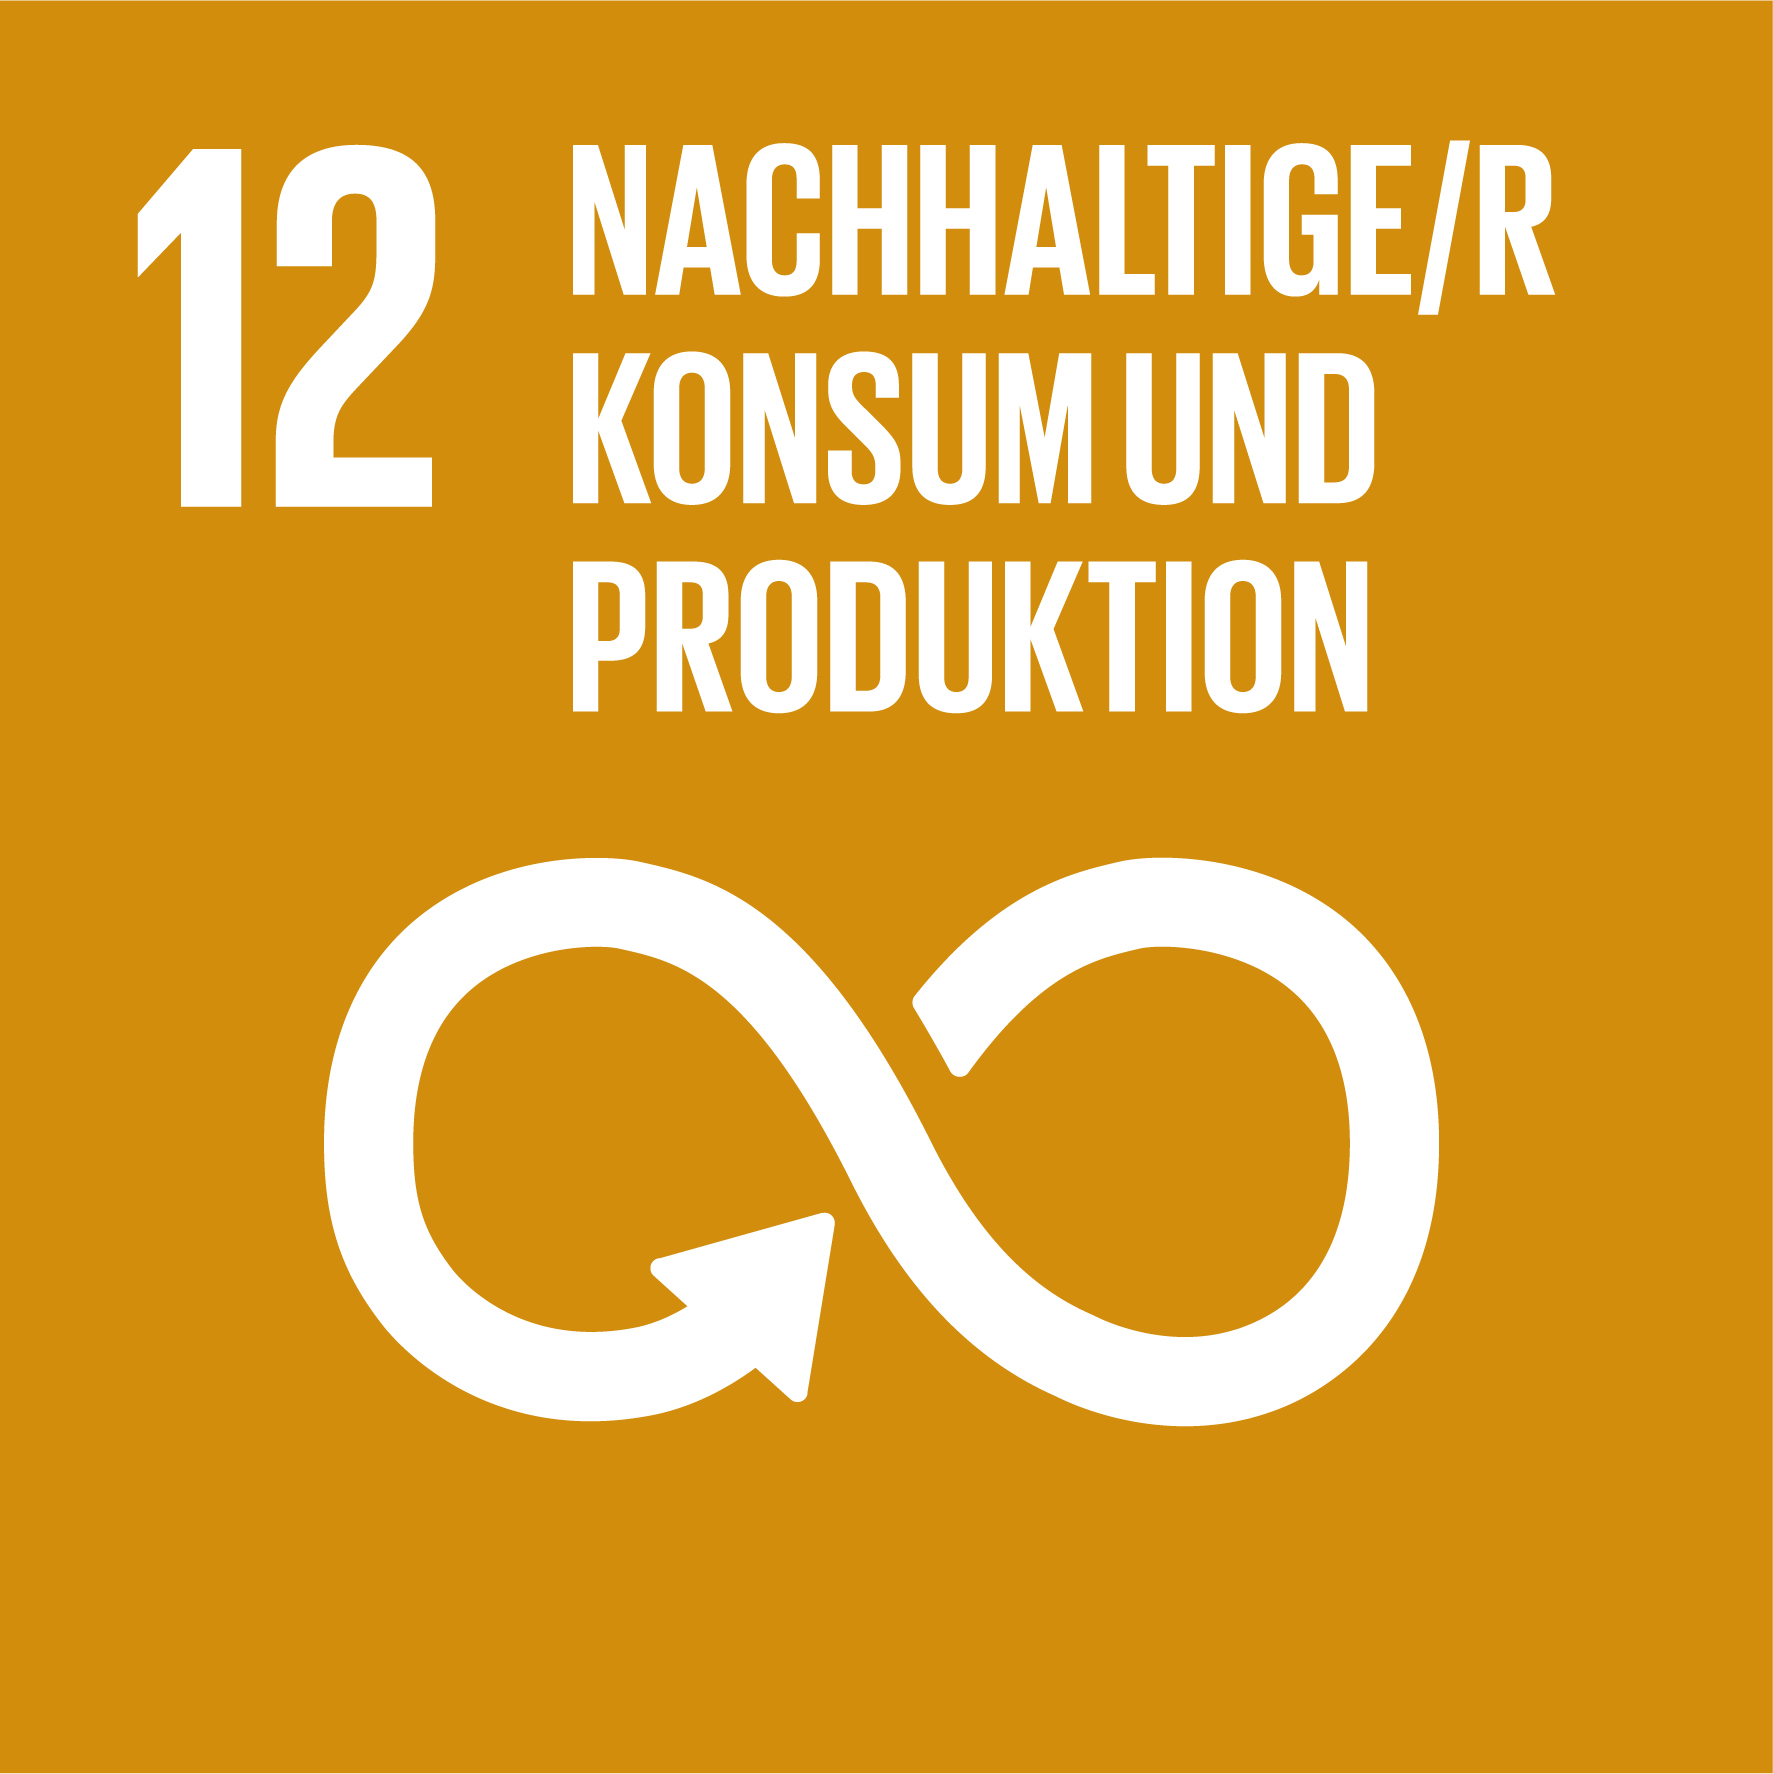 SDG: Nachhaltige/r Konsum und Produktion